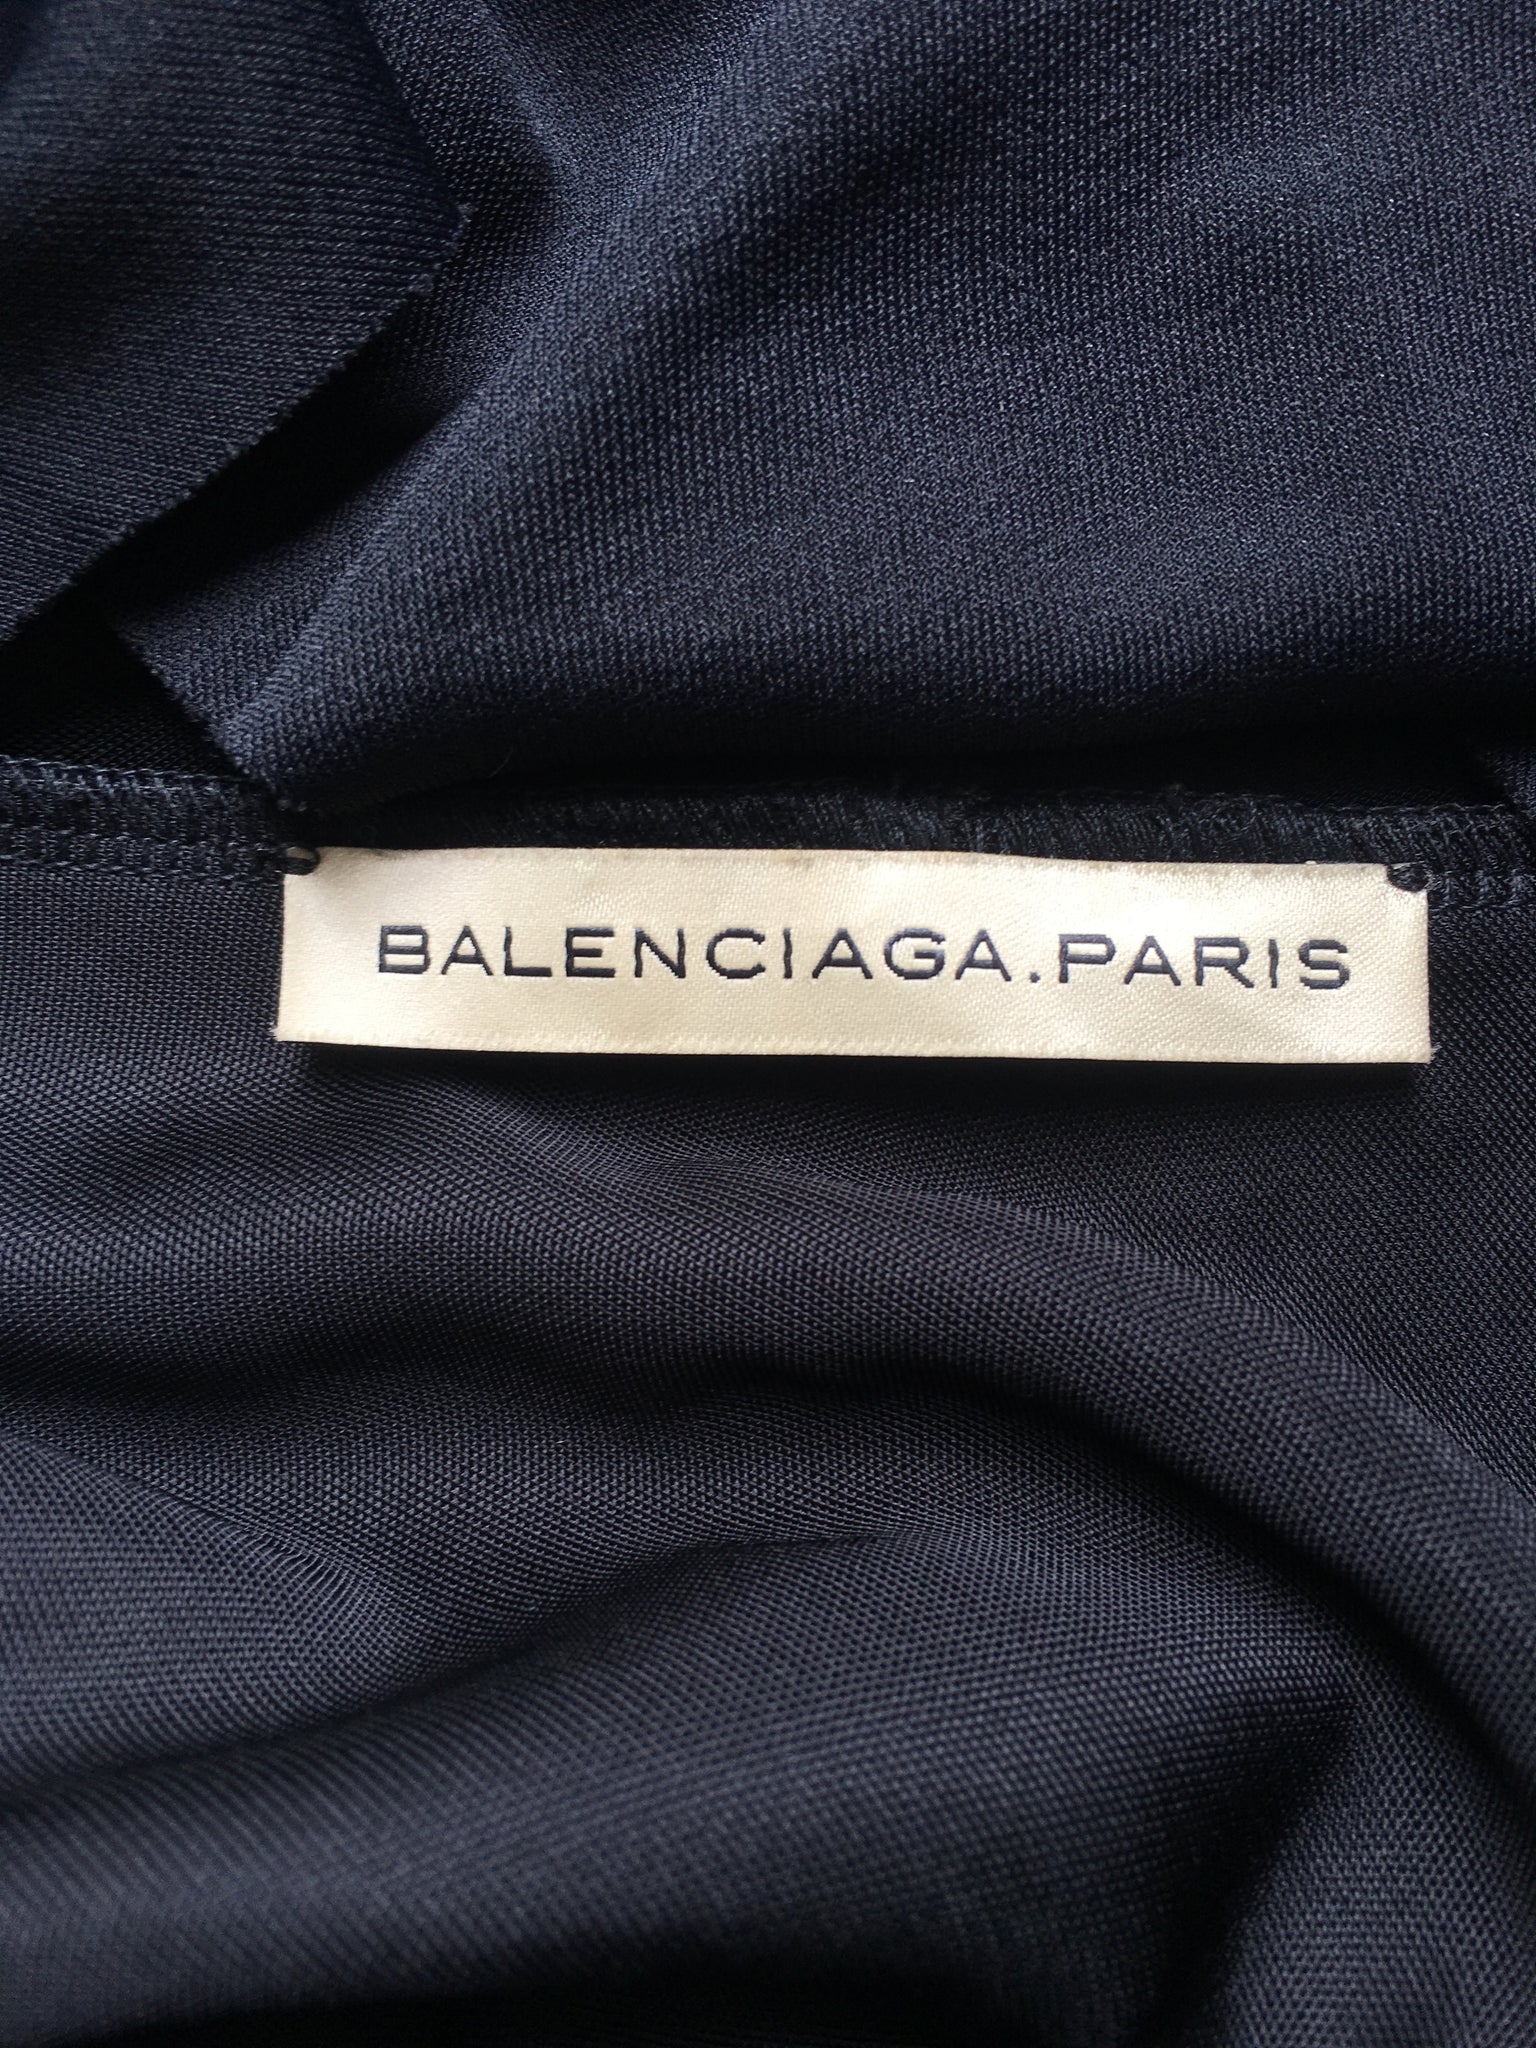 Balenciaga without Nicolas Ghesquière